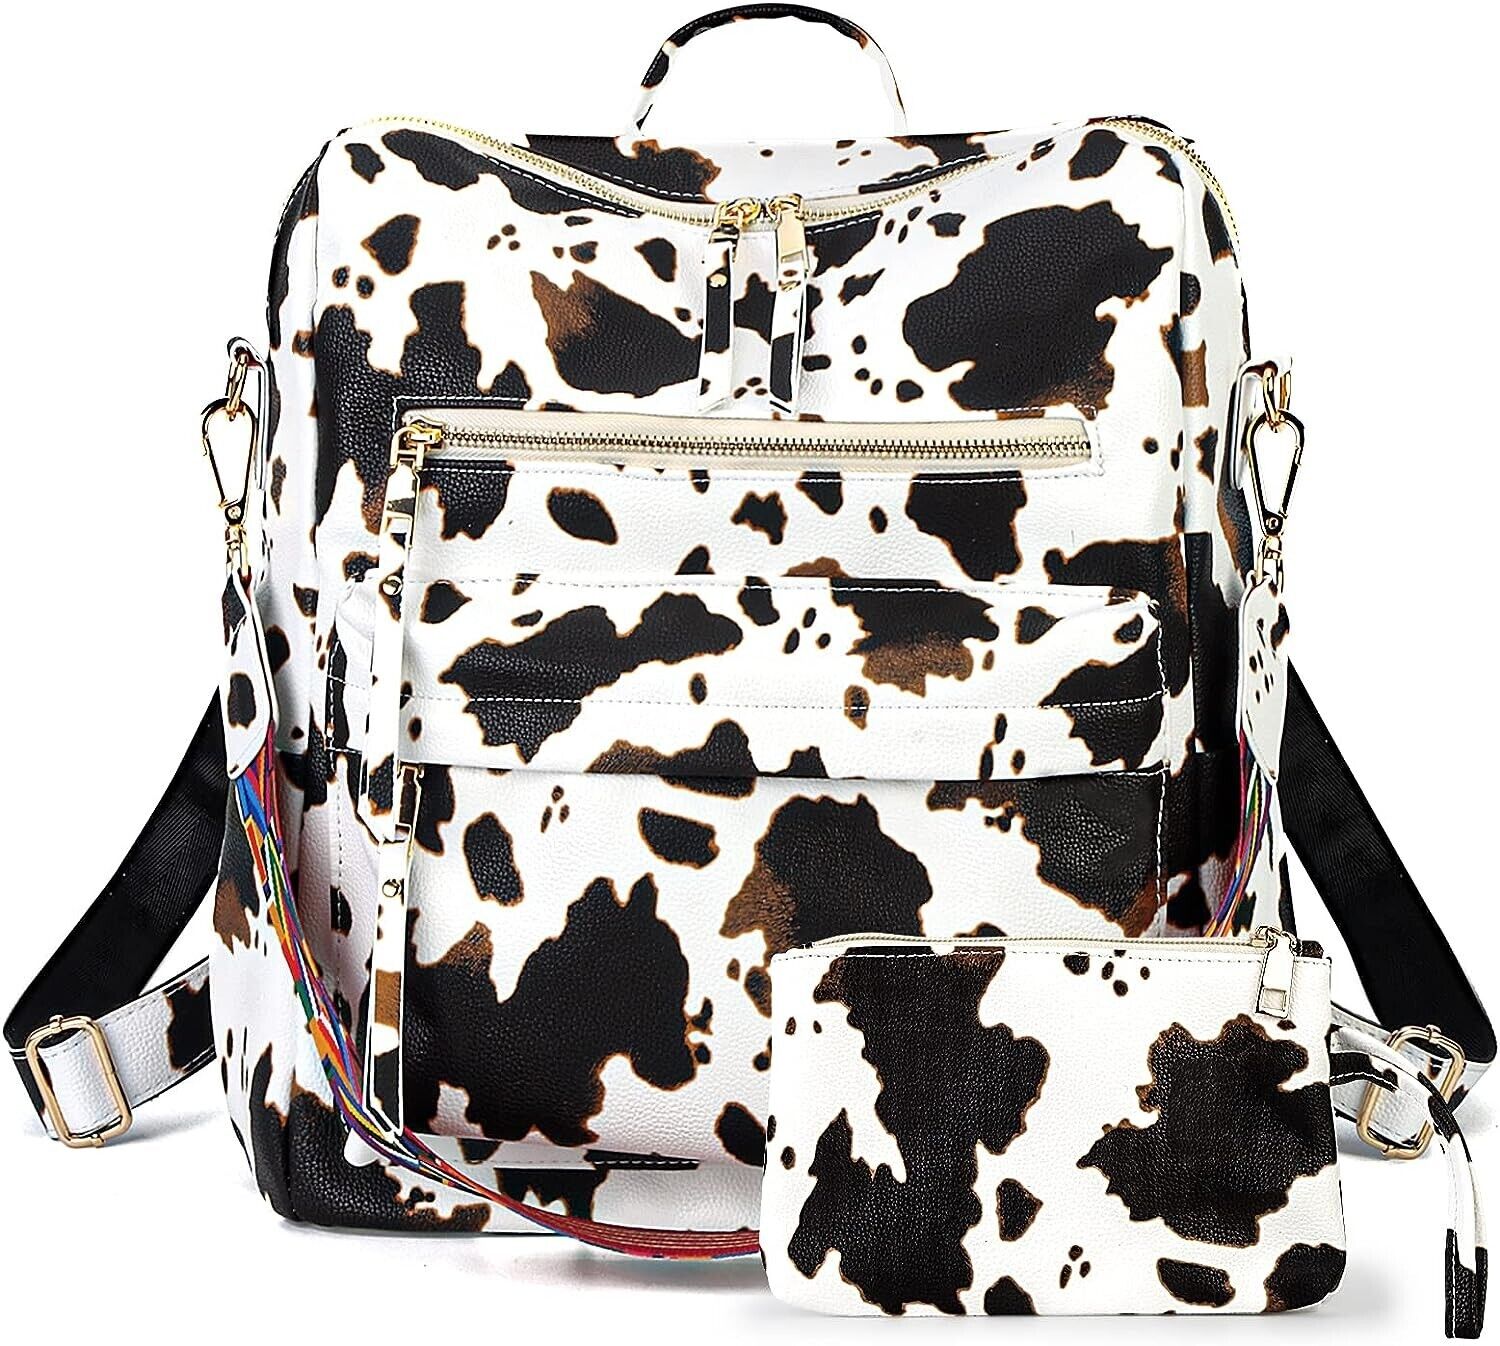 Sold at Auction: Jansport Backpack,Rolling Samsonite Bag,Miztique